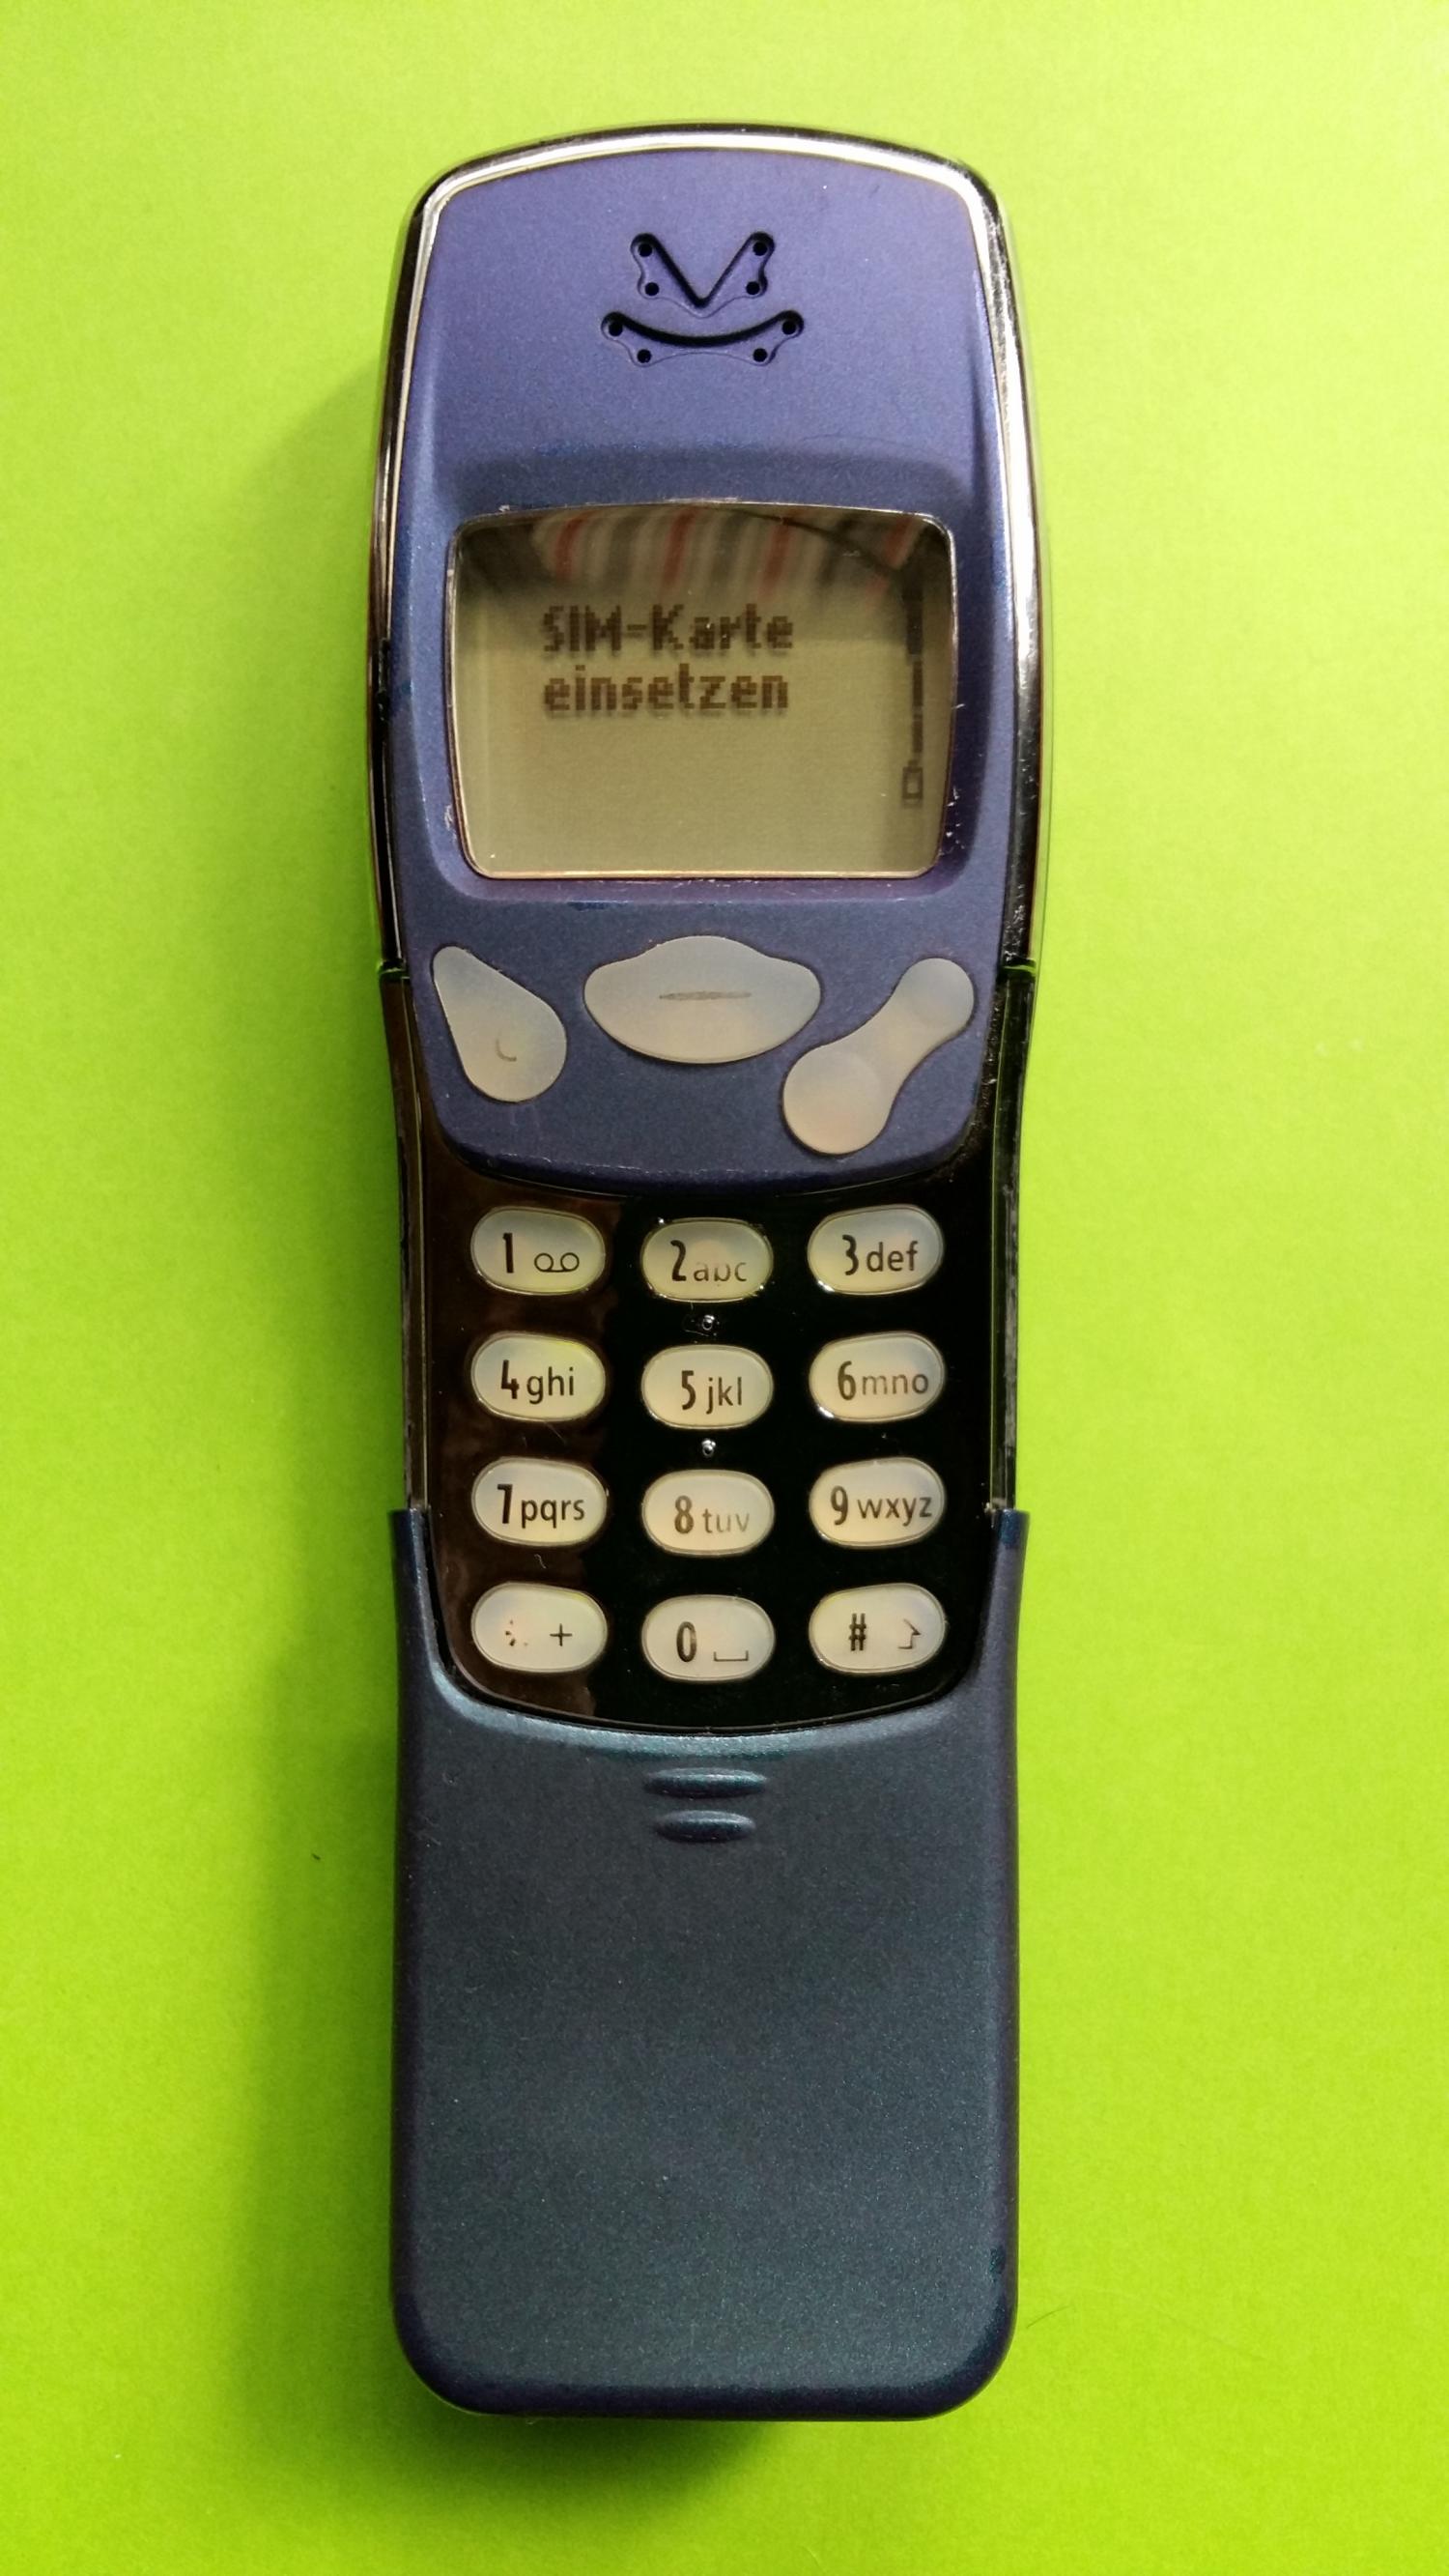 image-7305623-Nokia 3210 (11)2.jpg